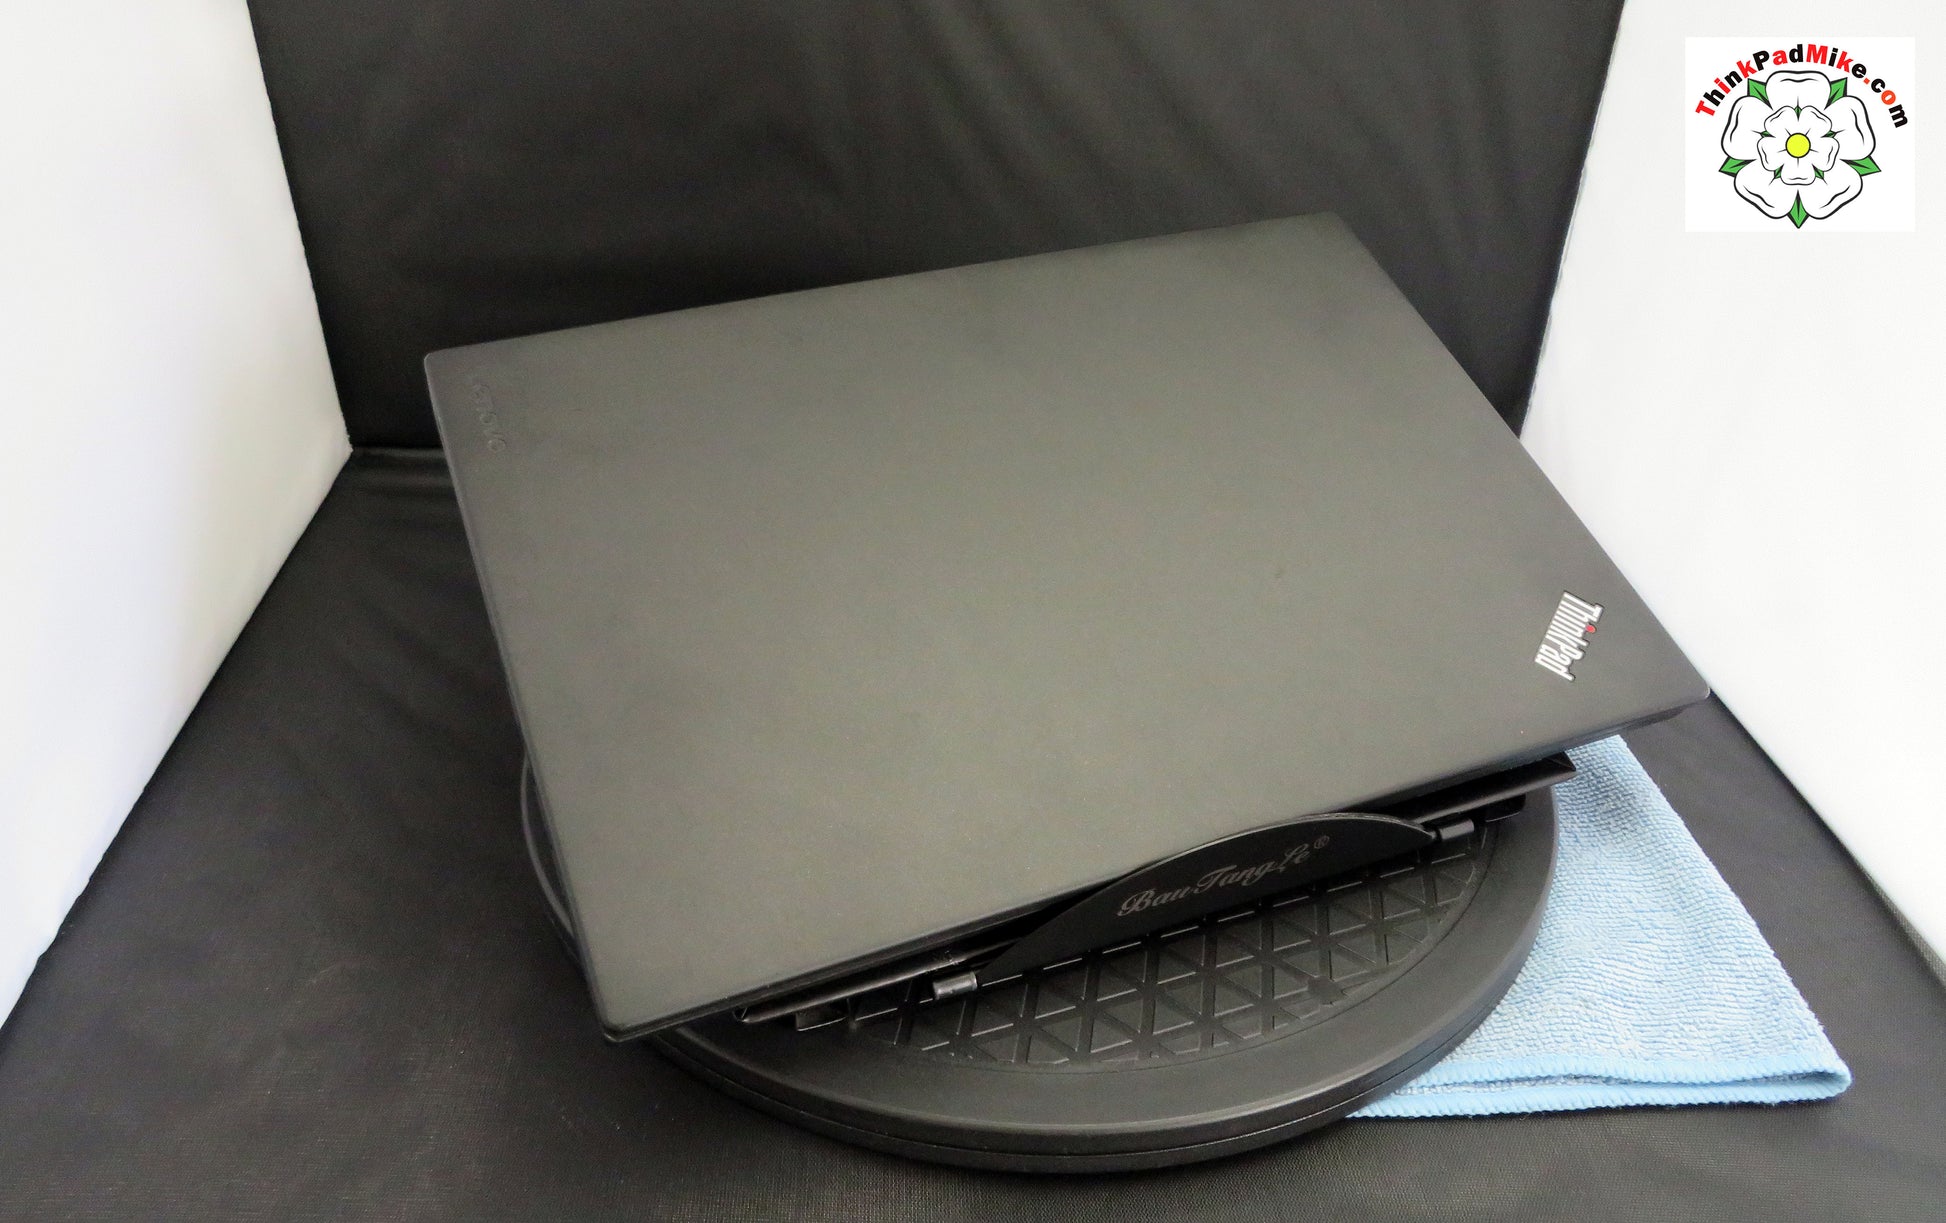 PC Portable 12,5 pouces ThinkPad X260 intel i5-6300U 2,40Ghz W10